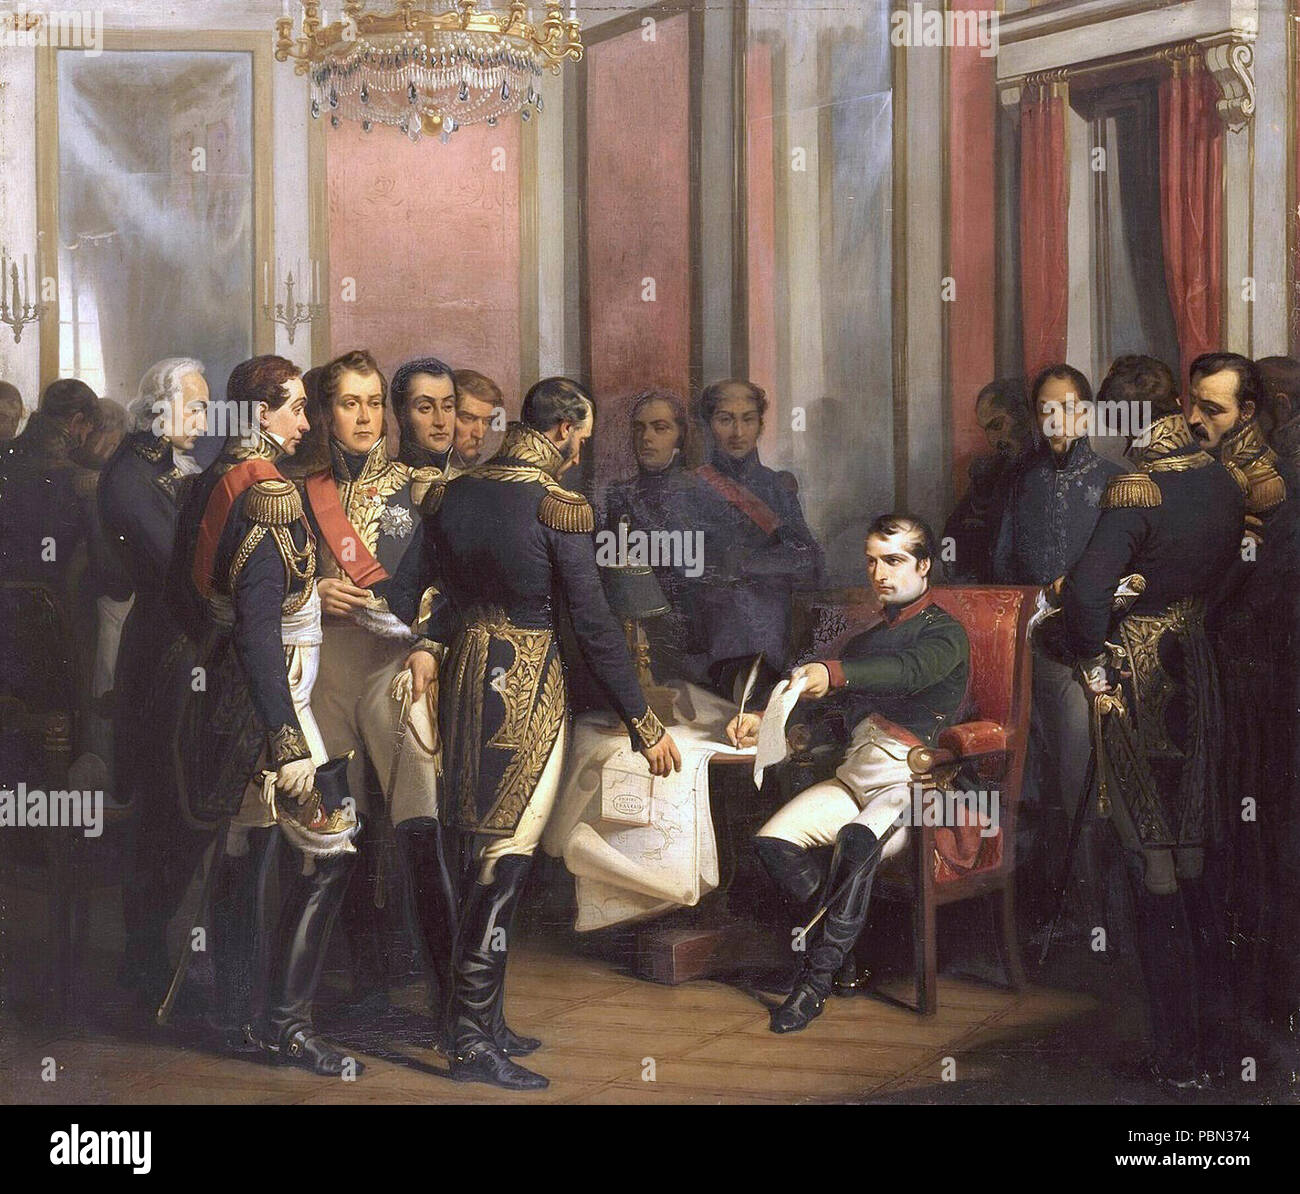 Bouchot - Napoléon signe son abdication à Fontainebleau 4 avril 1814. Stock Photo